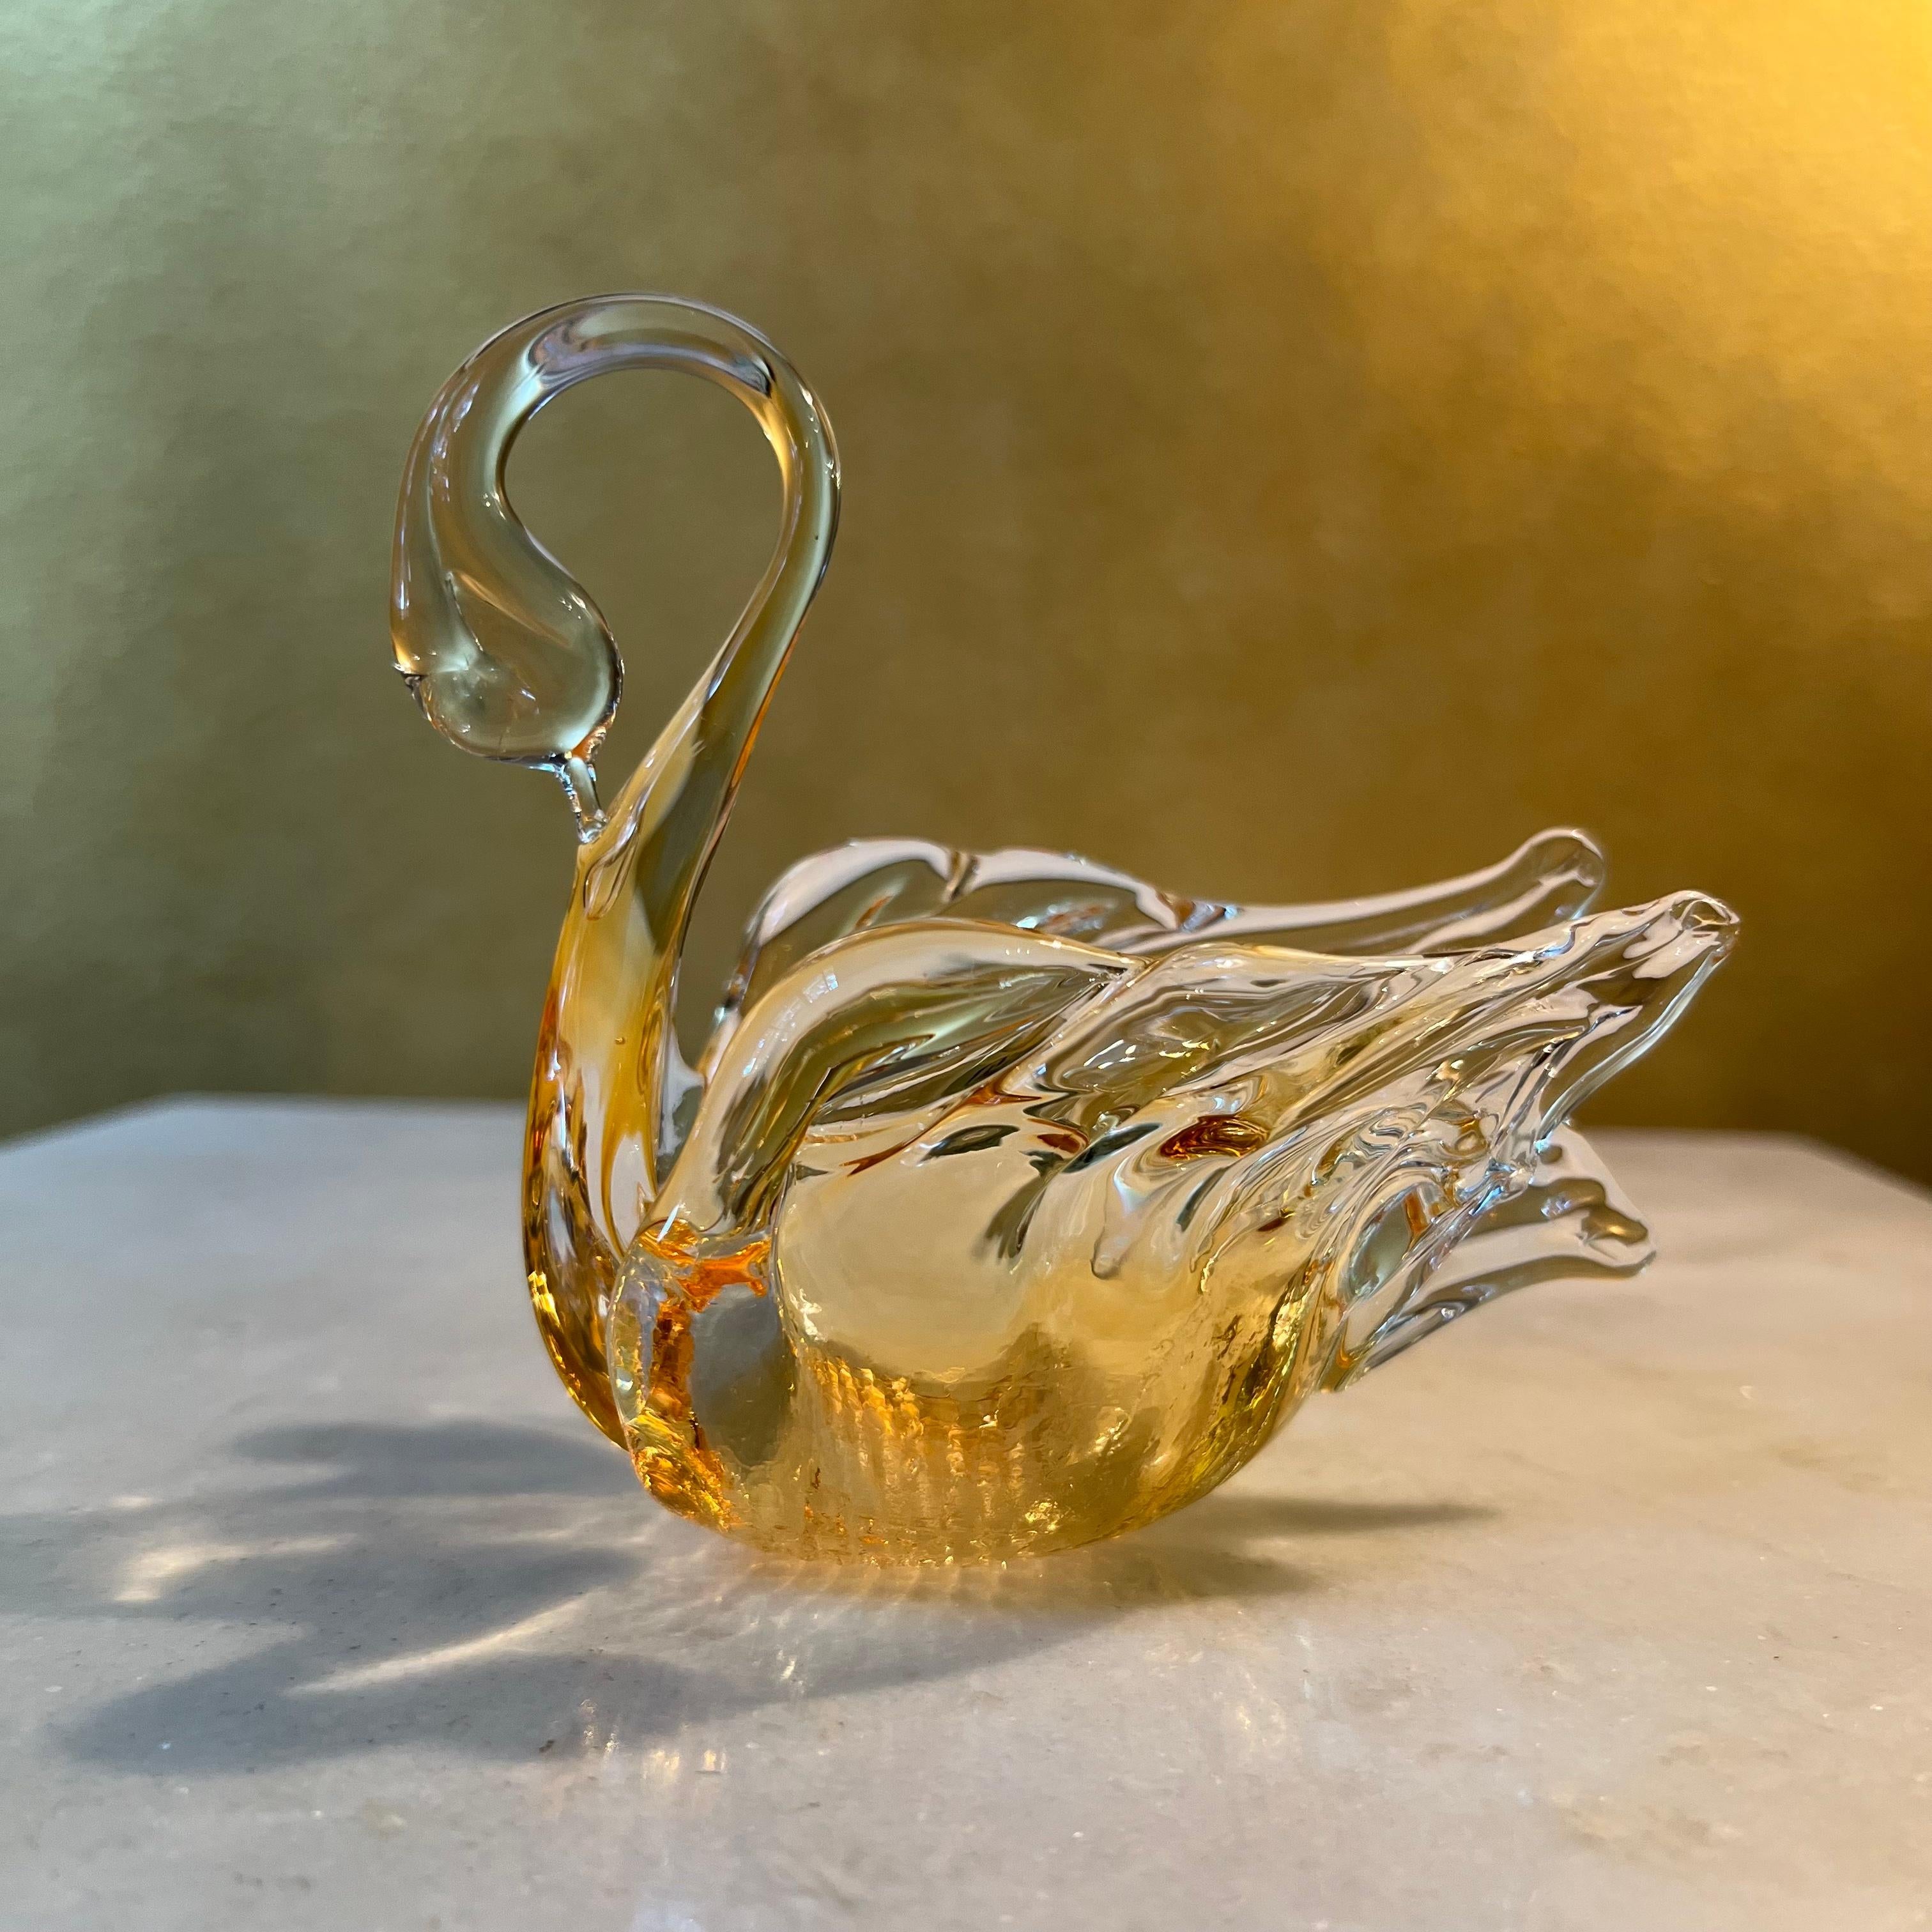 Goldenes und klares Glas kann als Ornament oder Schale verwendet werden, Aufkleber Chalet in Kanada 

MATERIAL: Glas

Herkunftsland: Kanada

Abmessungen: 12cm hoch, 12cm Länge, 7cm Breite

Versand über Australia Post mit Tracking verfügbar